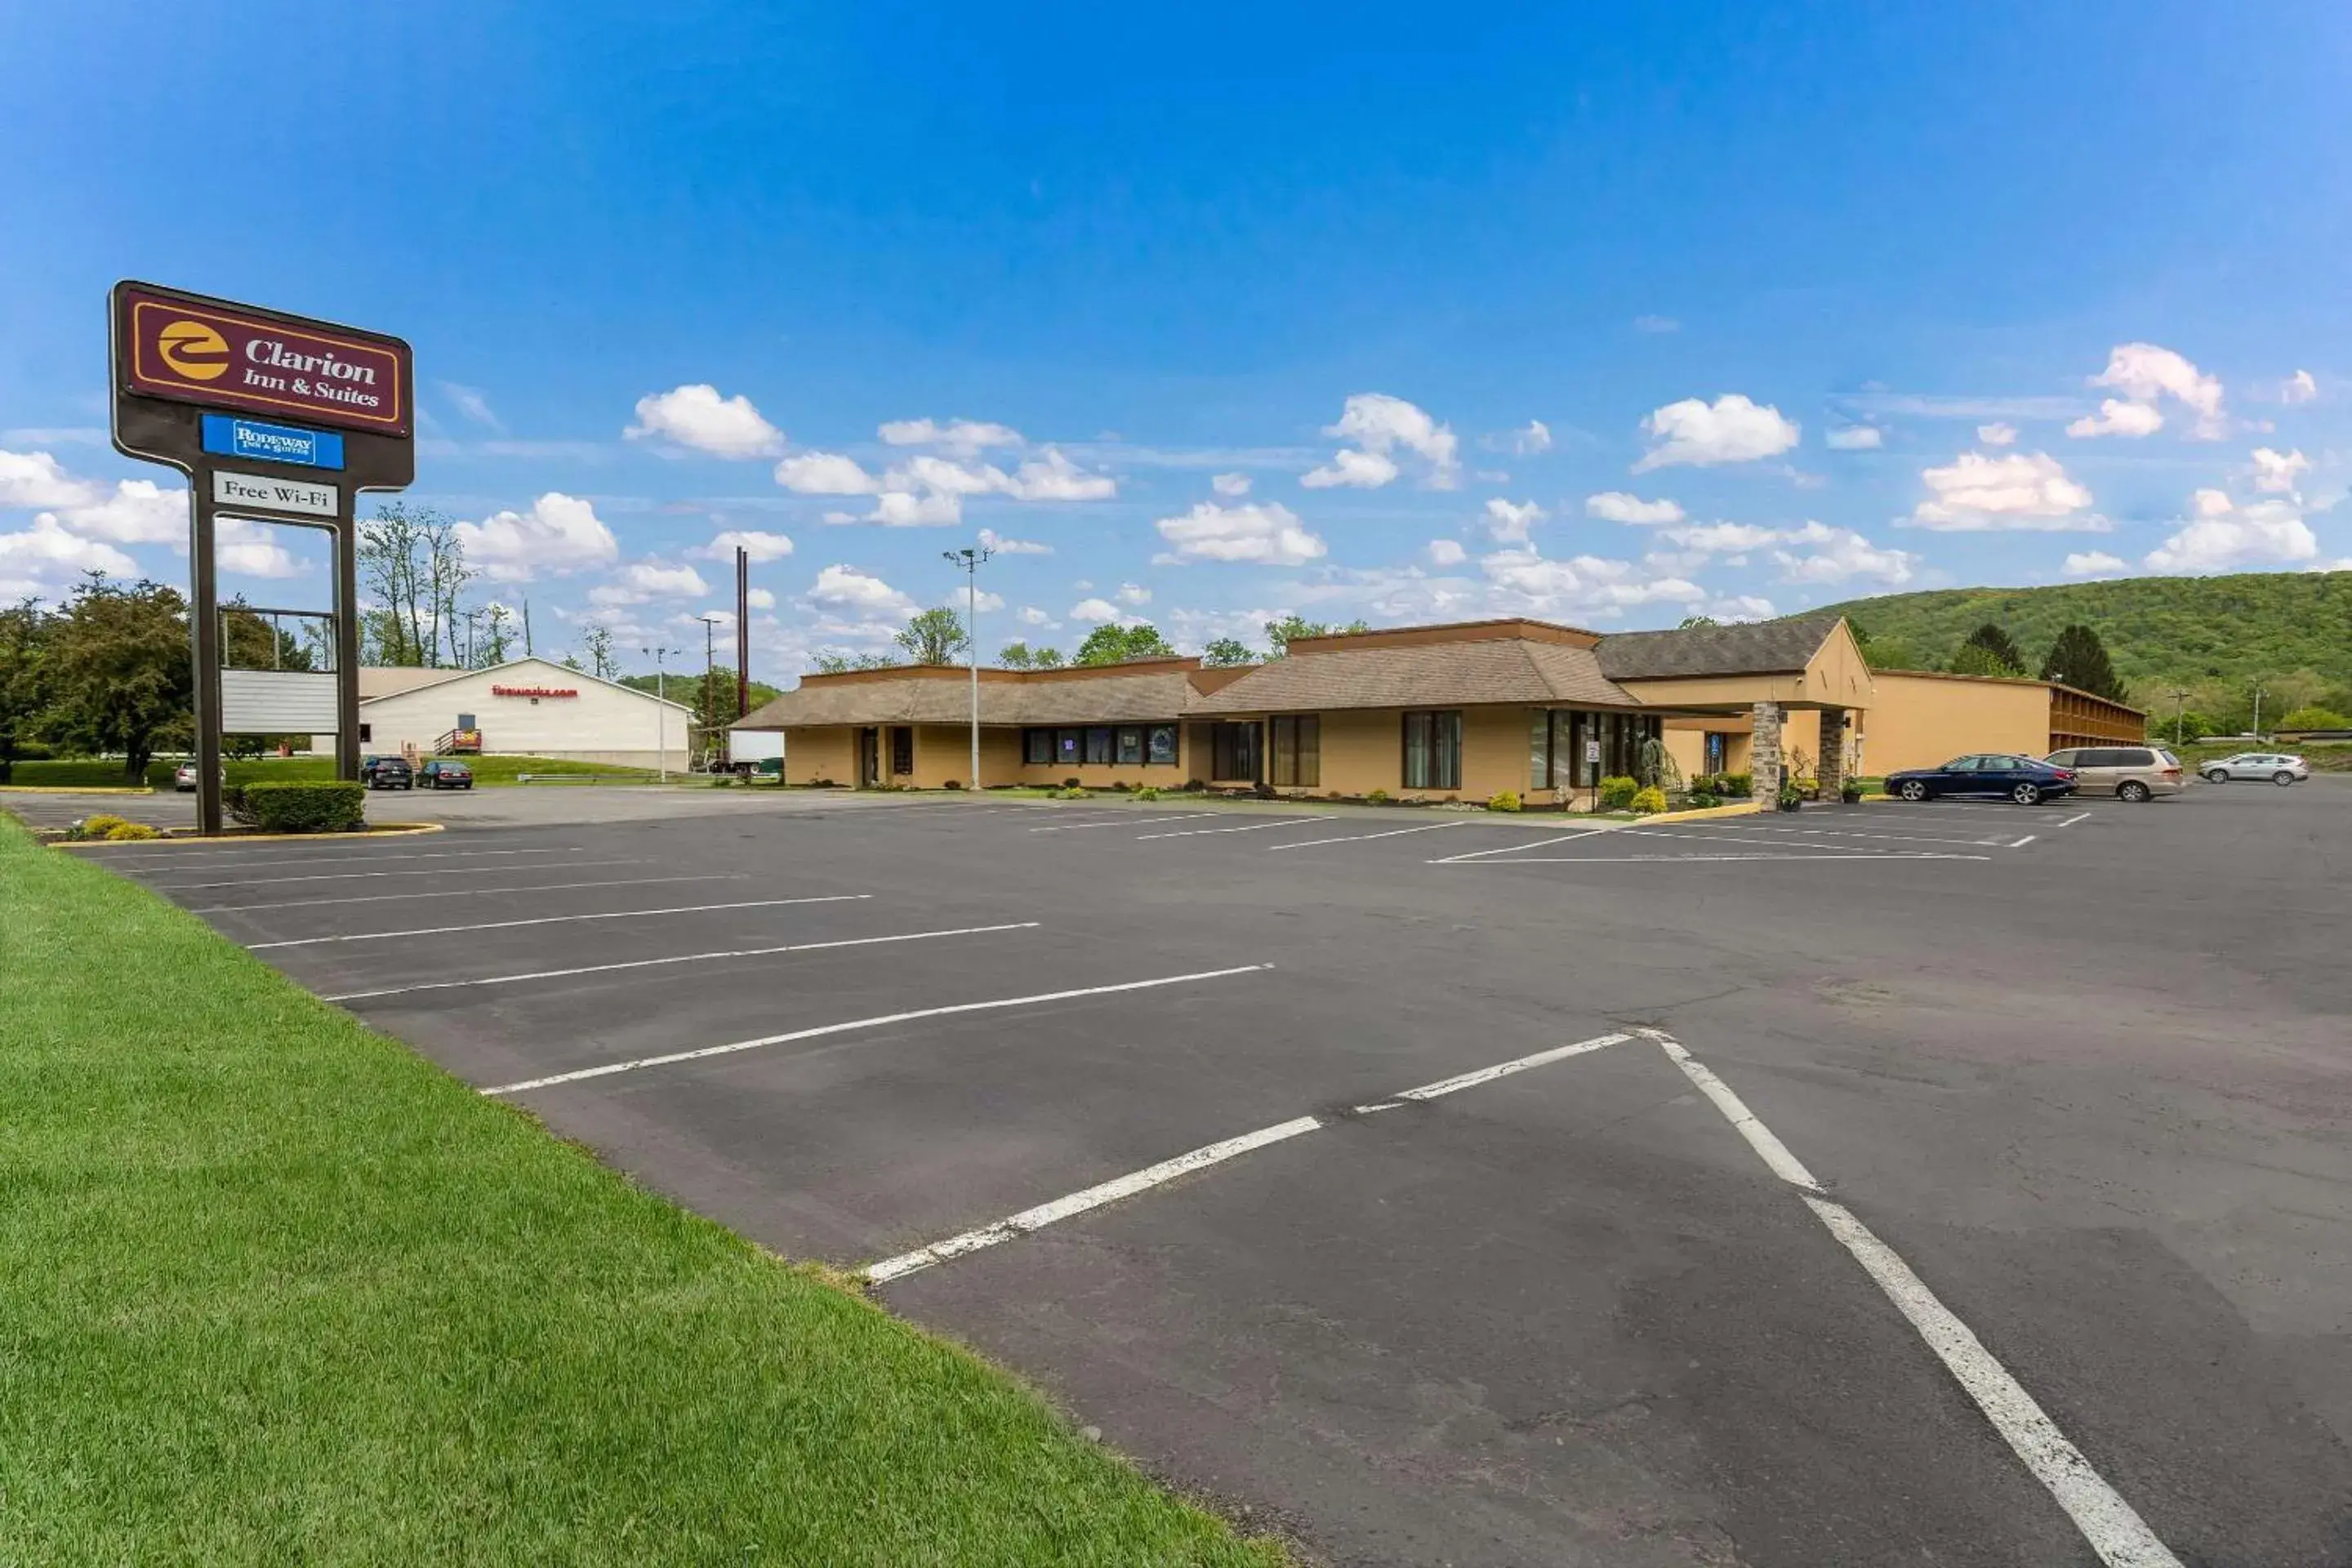 Property building in Clarion Inn & Suites Stroudsburg - Poconos